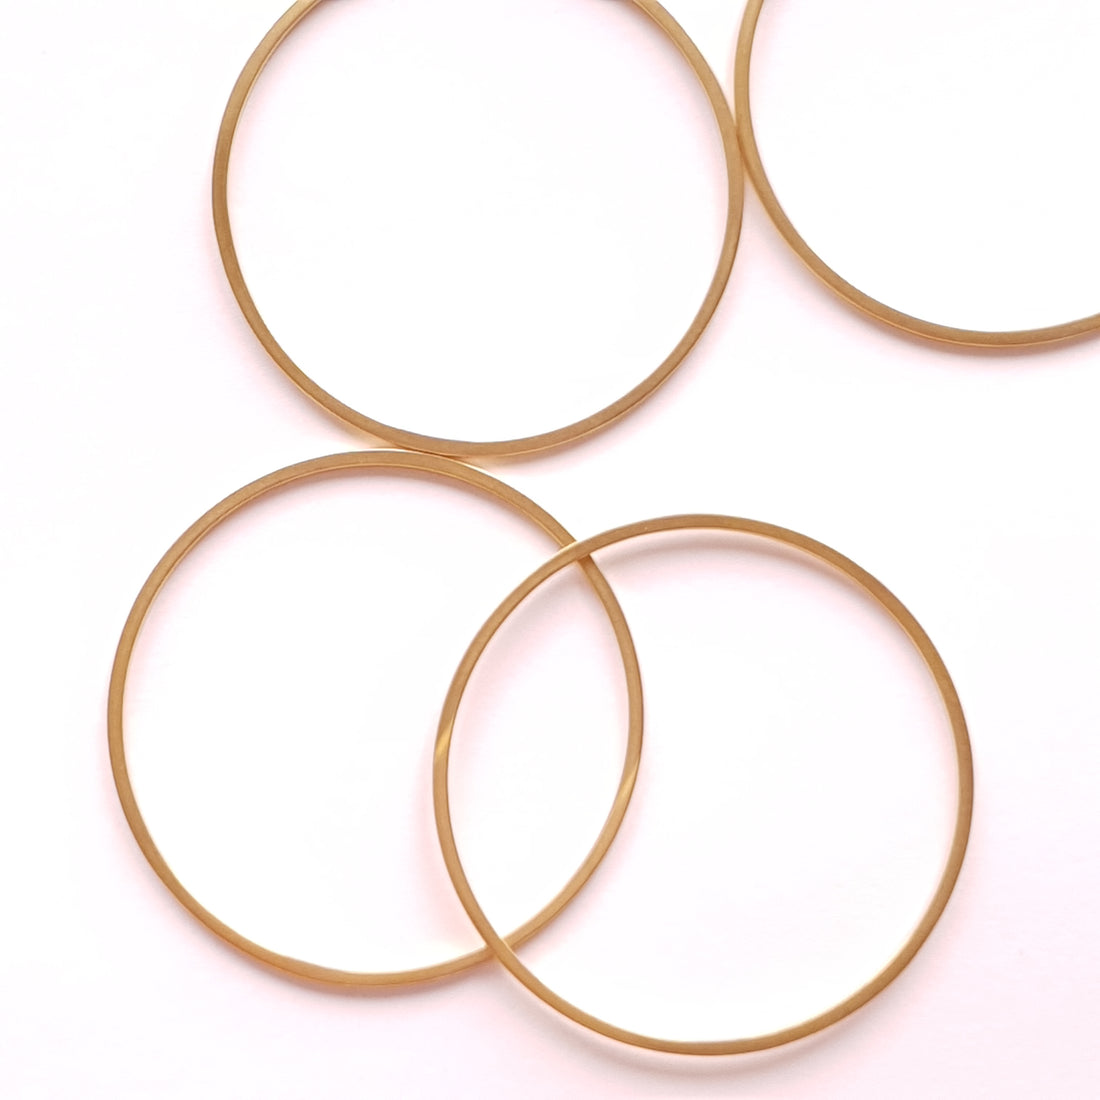 RVS ring 35mm sieraden maken. heel geschikt voor oorbellen of hanger. goud kleur